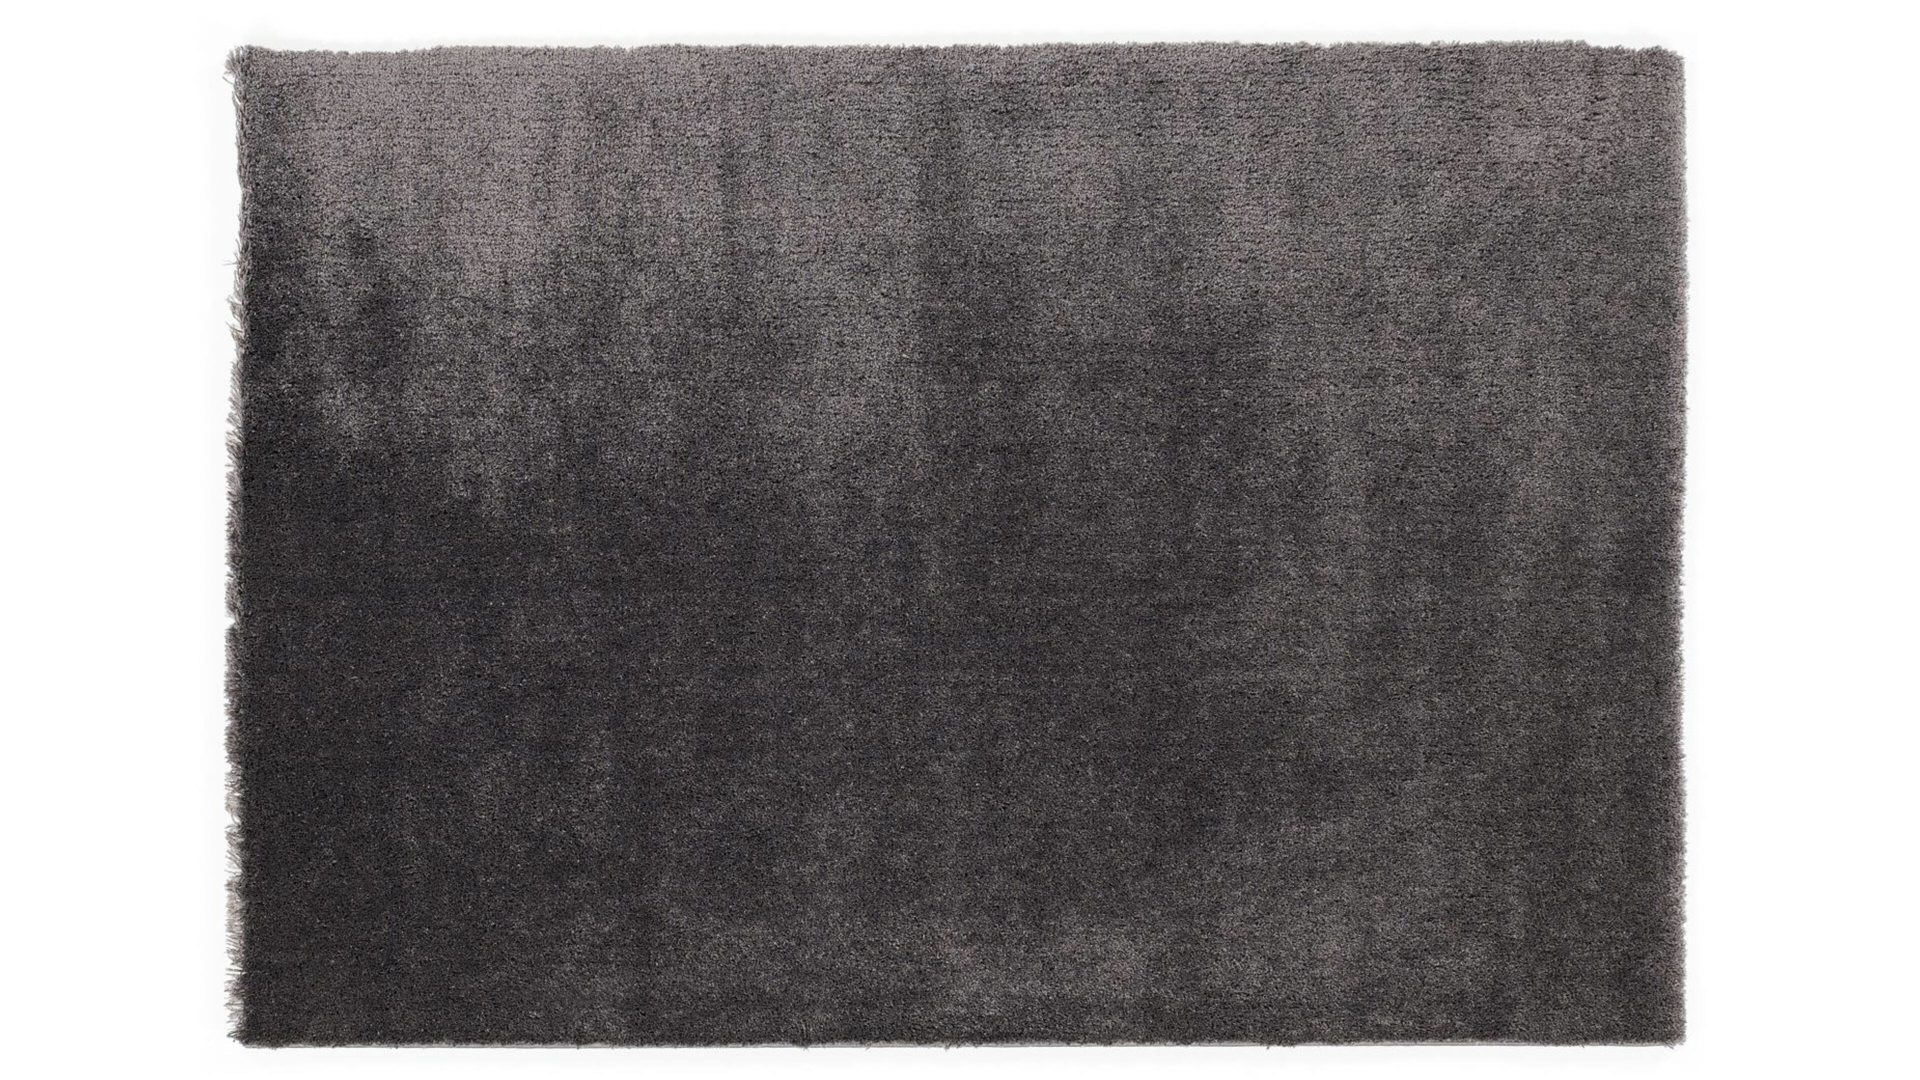 Shaggyteppich Oci aus Kunstfaser in Schwarz Shaggyteppich Royal Shaggy für Ihre Wohnaccessoires  quarzfarbene Kunstfaser – ca. 65 x 130 cm